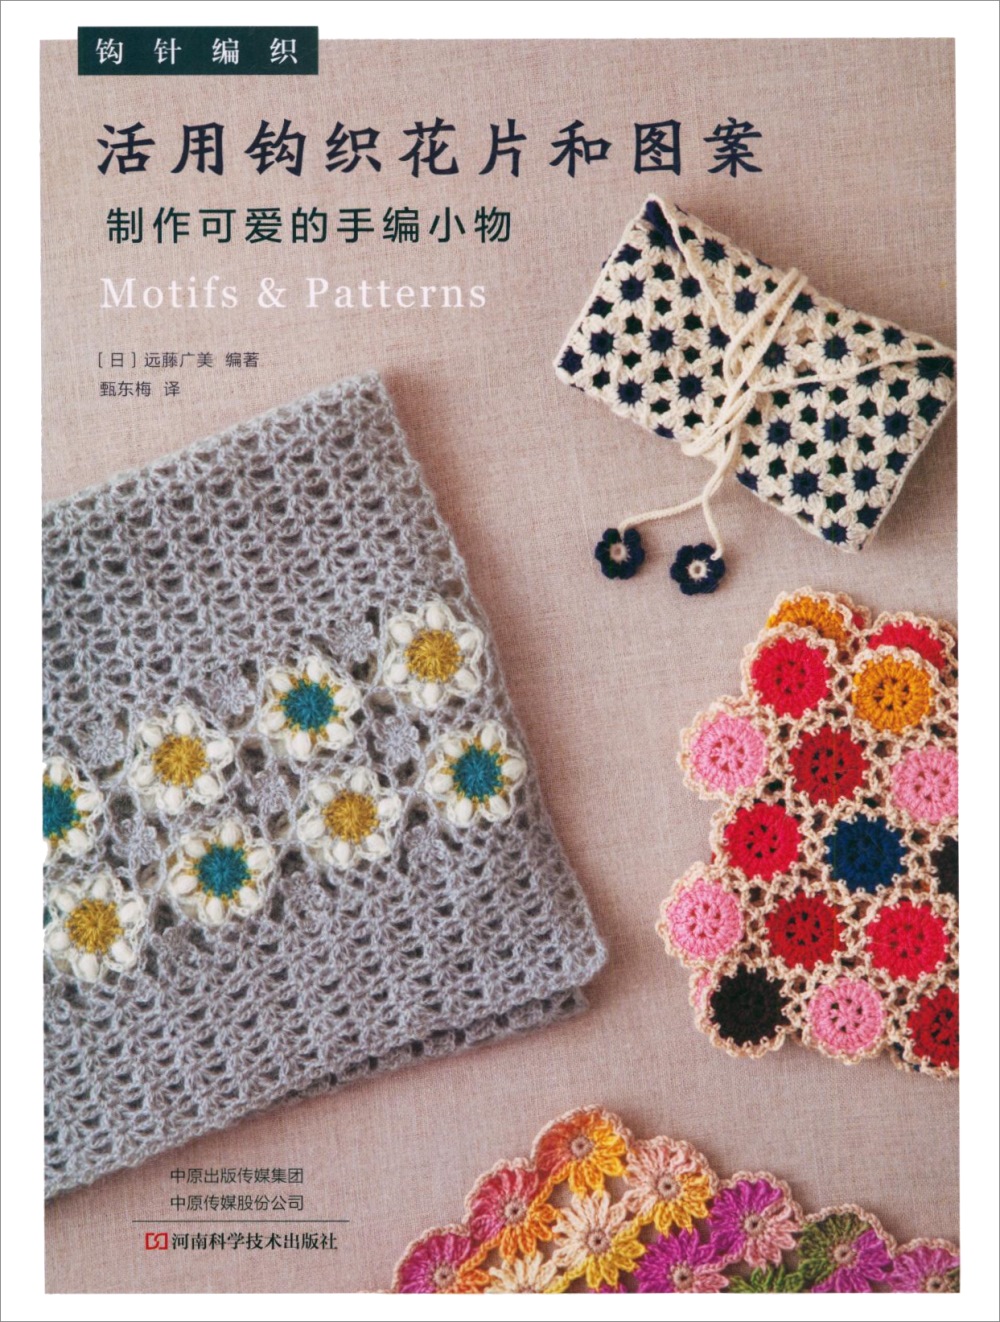 活用鉤織花片和圖案製作可愛的手編小物